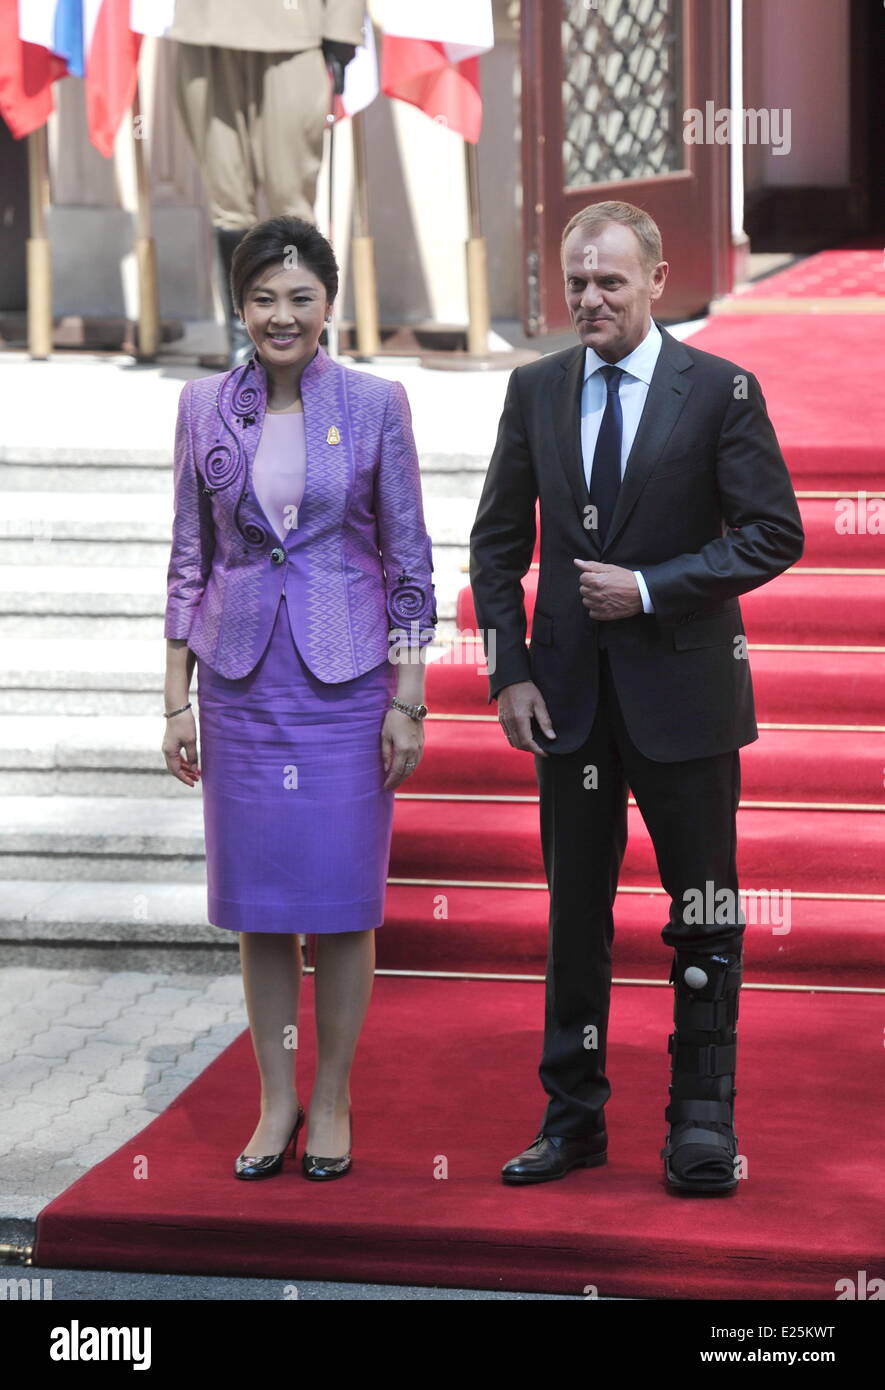 Premierminister von Thailand Yingluck Shinawatra wird begrüßt von der Premierminister von Polen Donald Tusk bei einem Besuch in Warschau Featuring: Donald Tusk, Yingluck Shinawatra wo: Warschau, Polen bei: 4. Juli 2013 Stockfoto